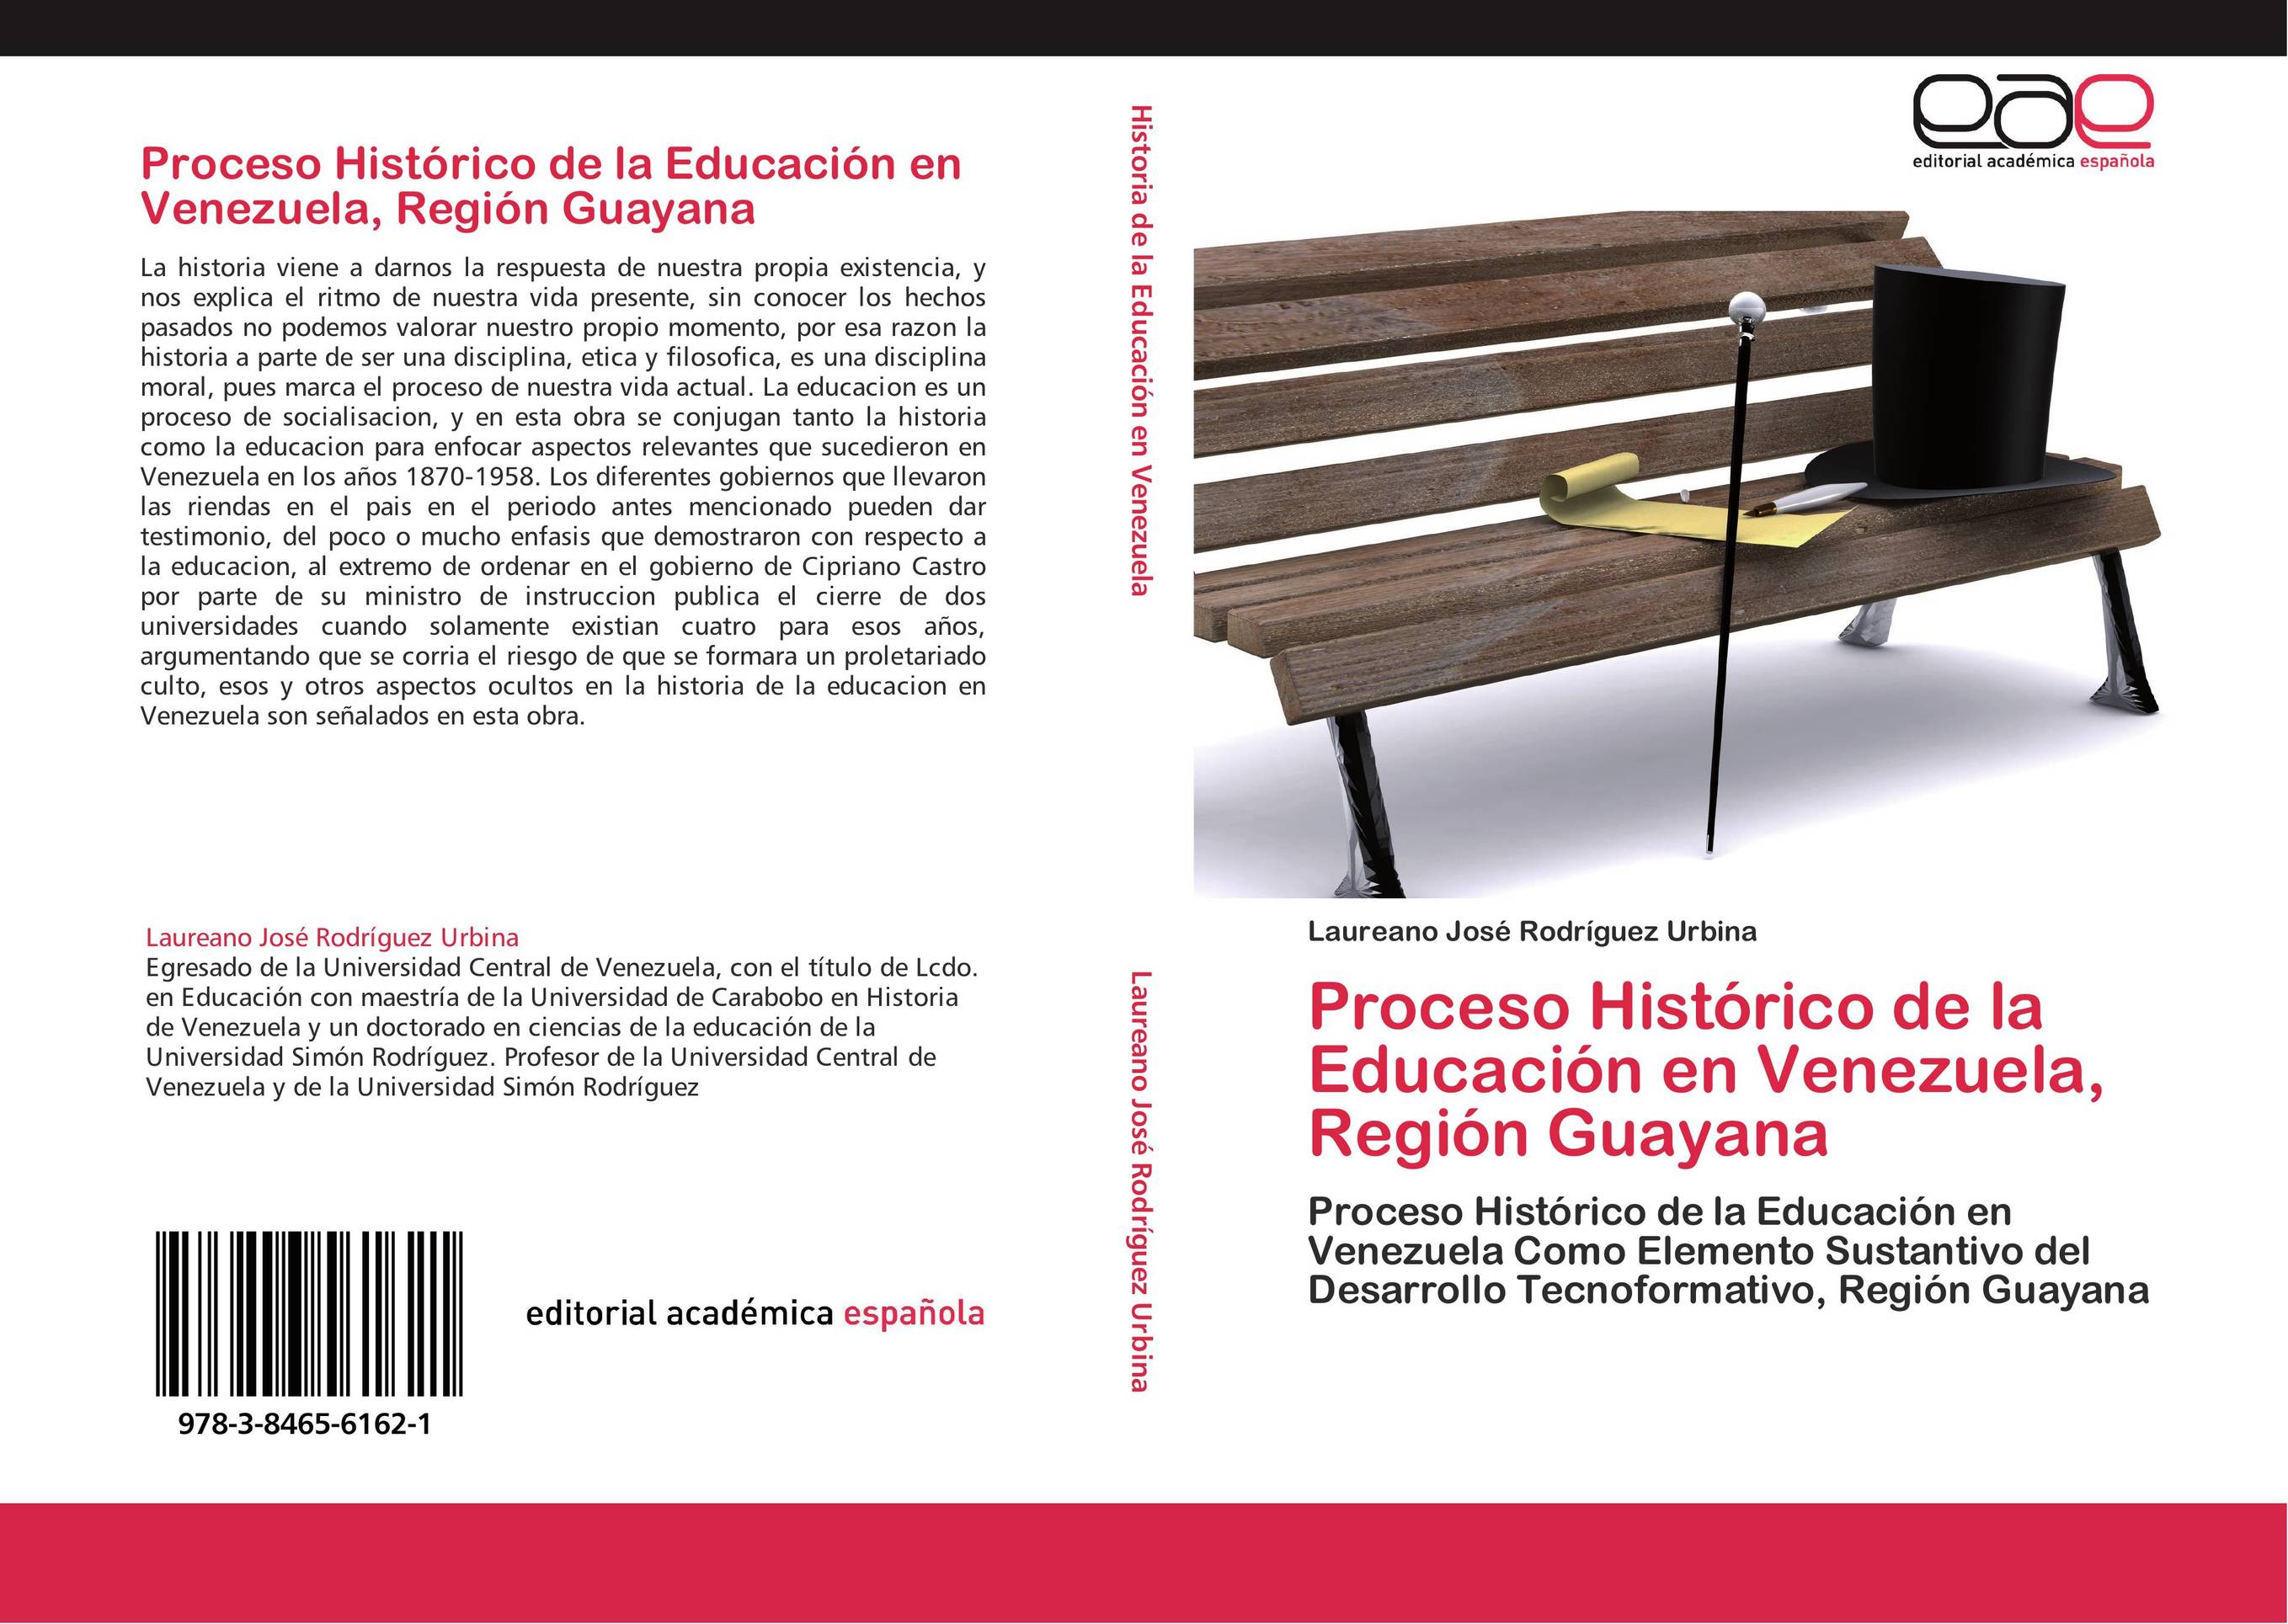 Proceso Histórico de la Educación en Venezuela, Región Guayana